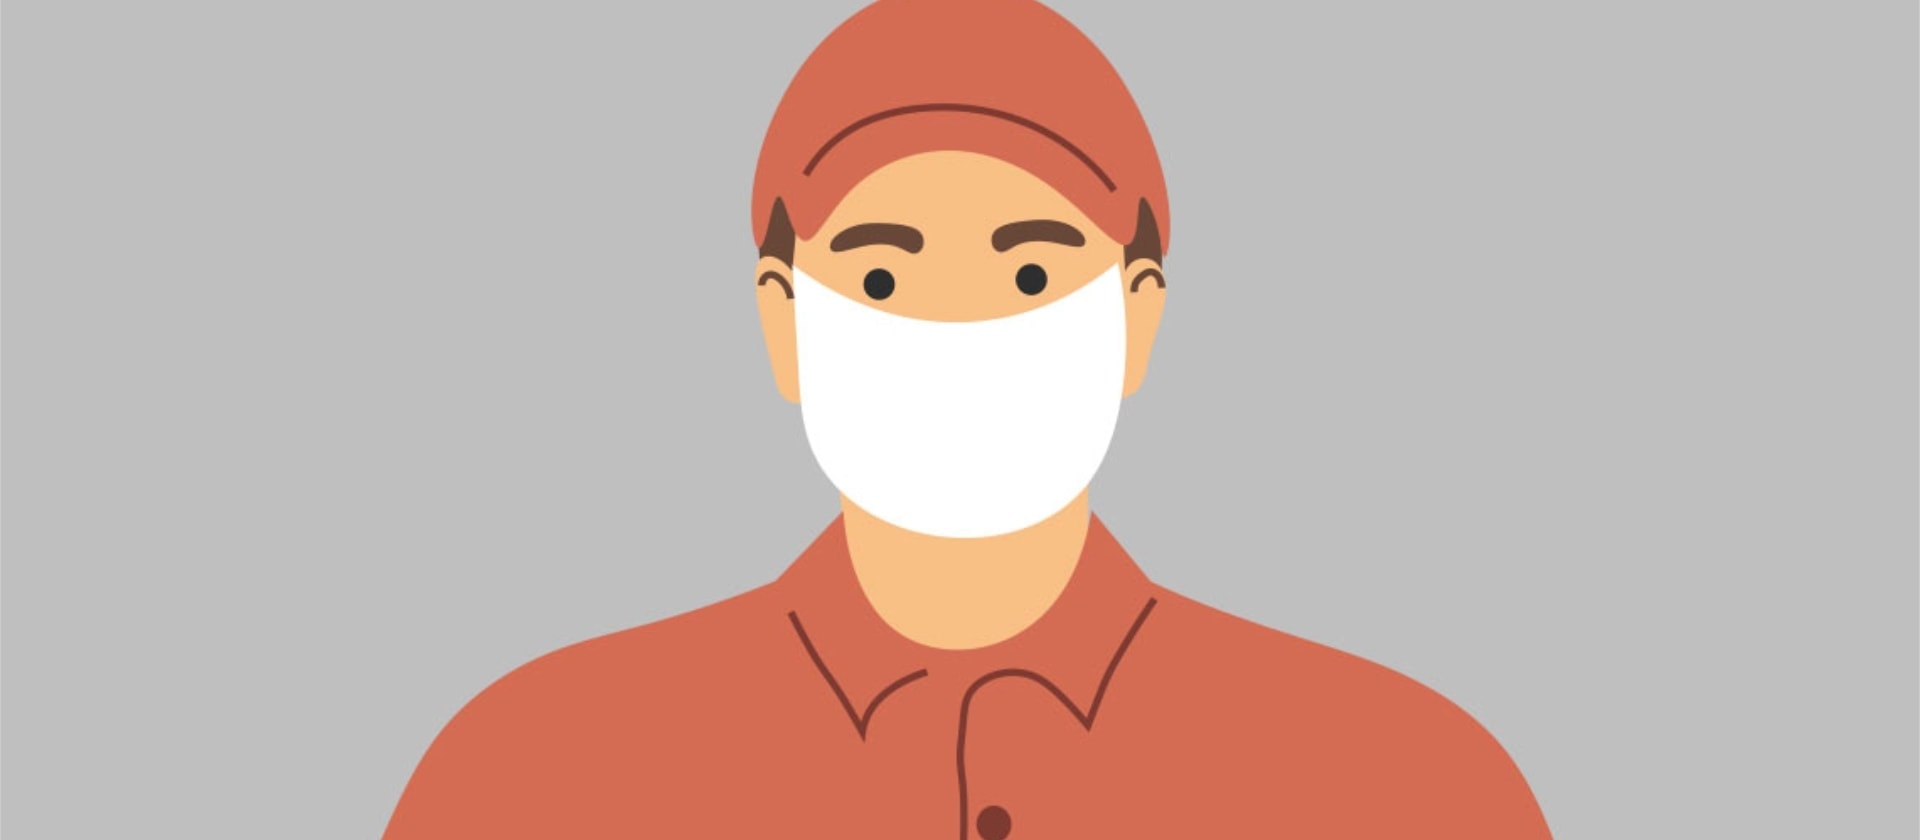 Beschäftigter im Lieferdienst trägt bei der Arbeit überwiegend eine Mund-Nasen-Bedeckung